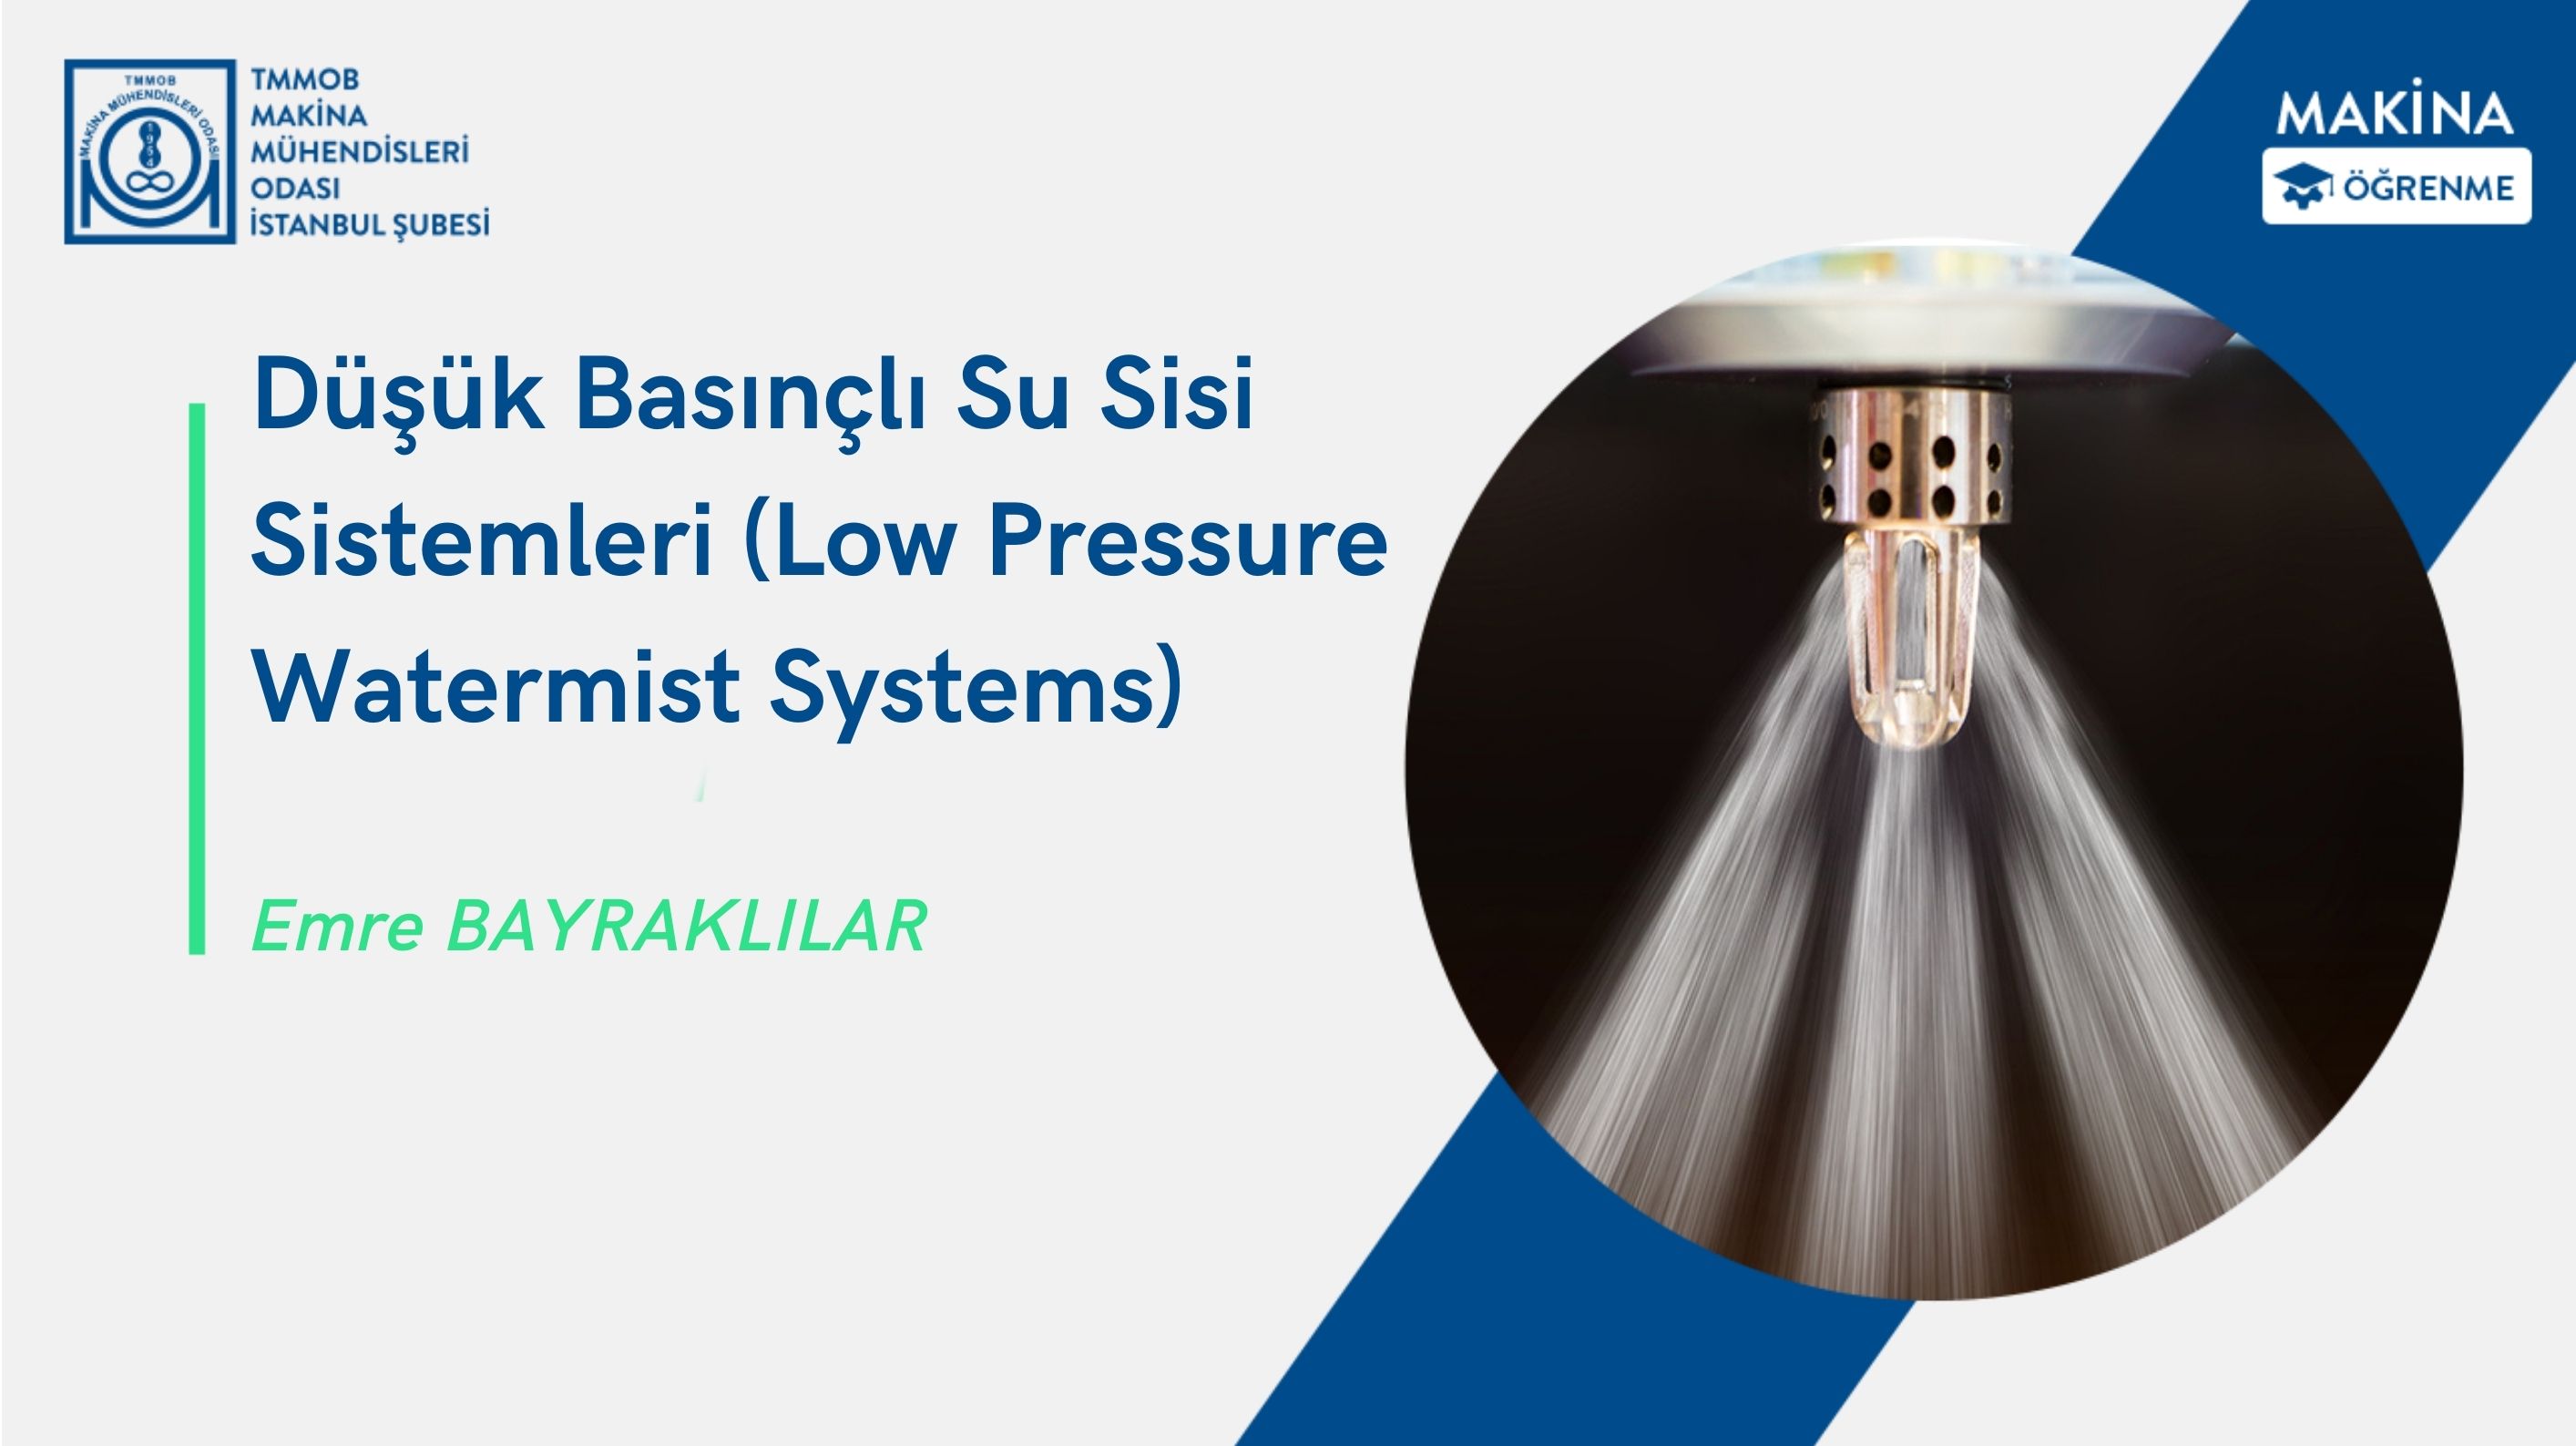 Düşük Basınçlı Su Sisi Sistemleri (Low Pressure Watermist Systems)